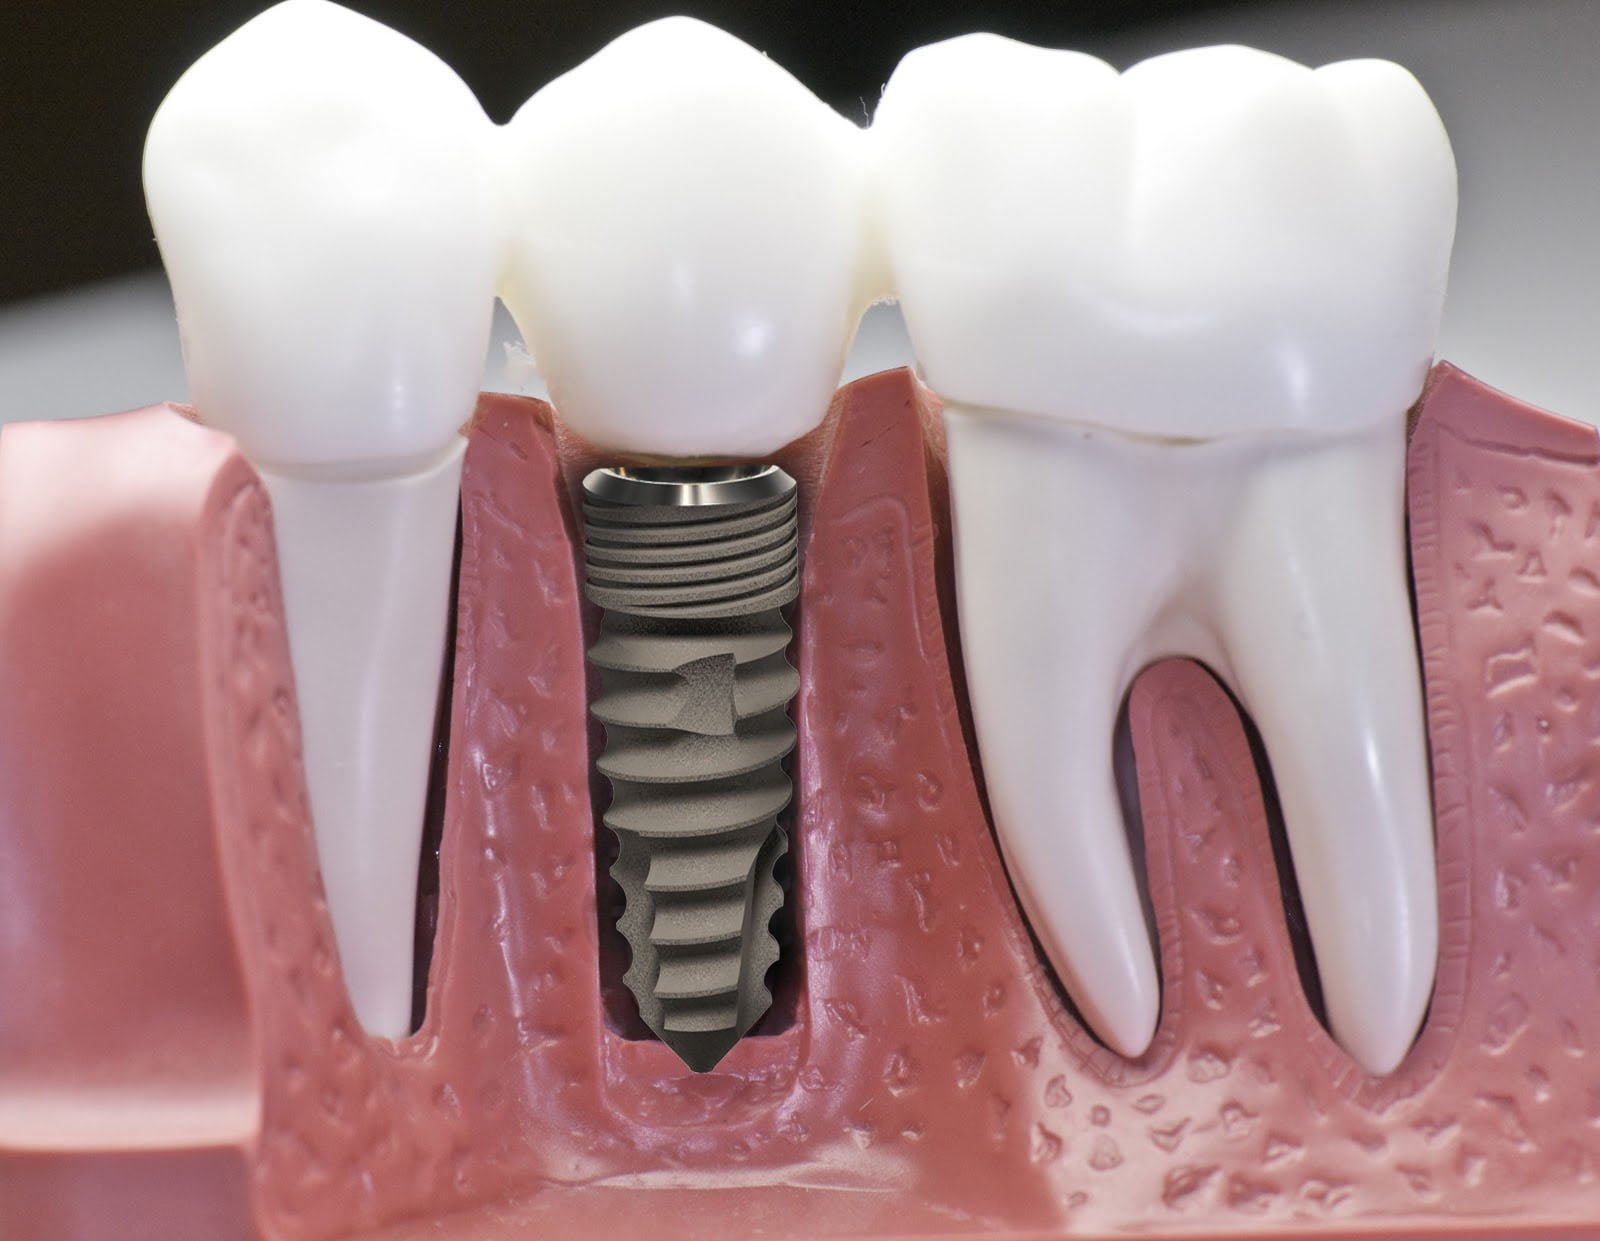 Cấy ghép Implant răng hàm như thế nào